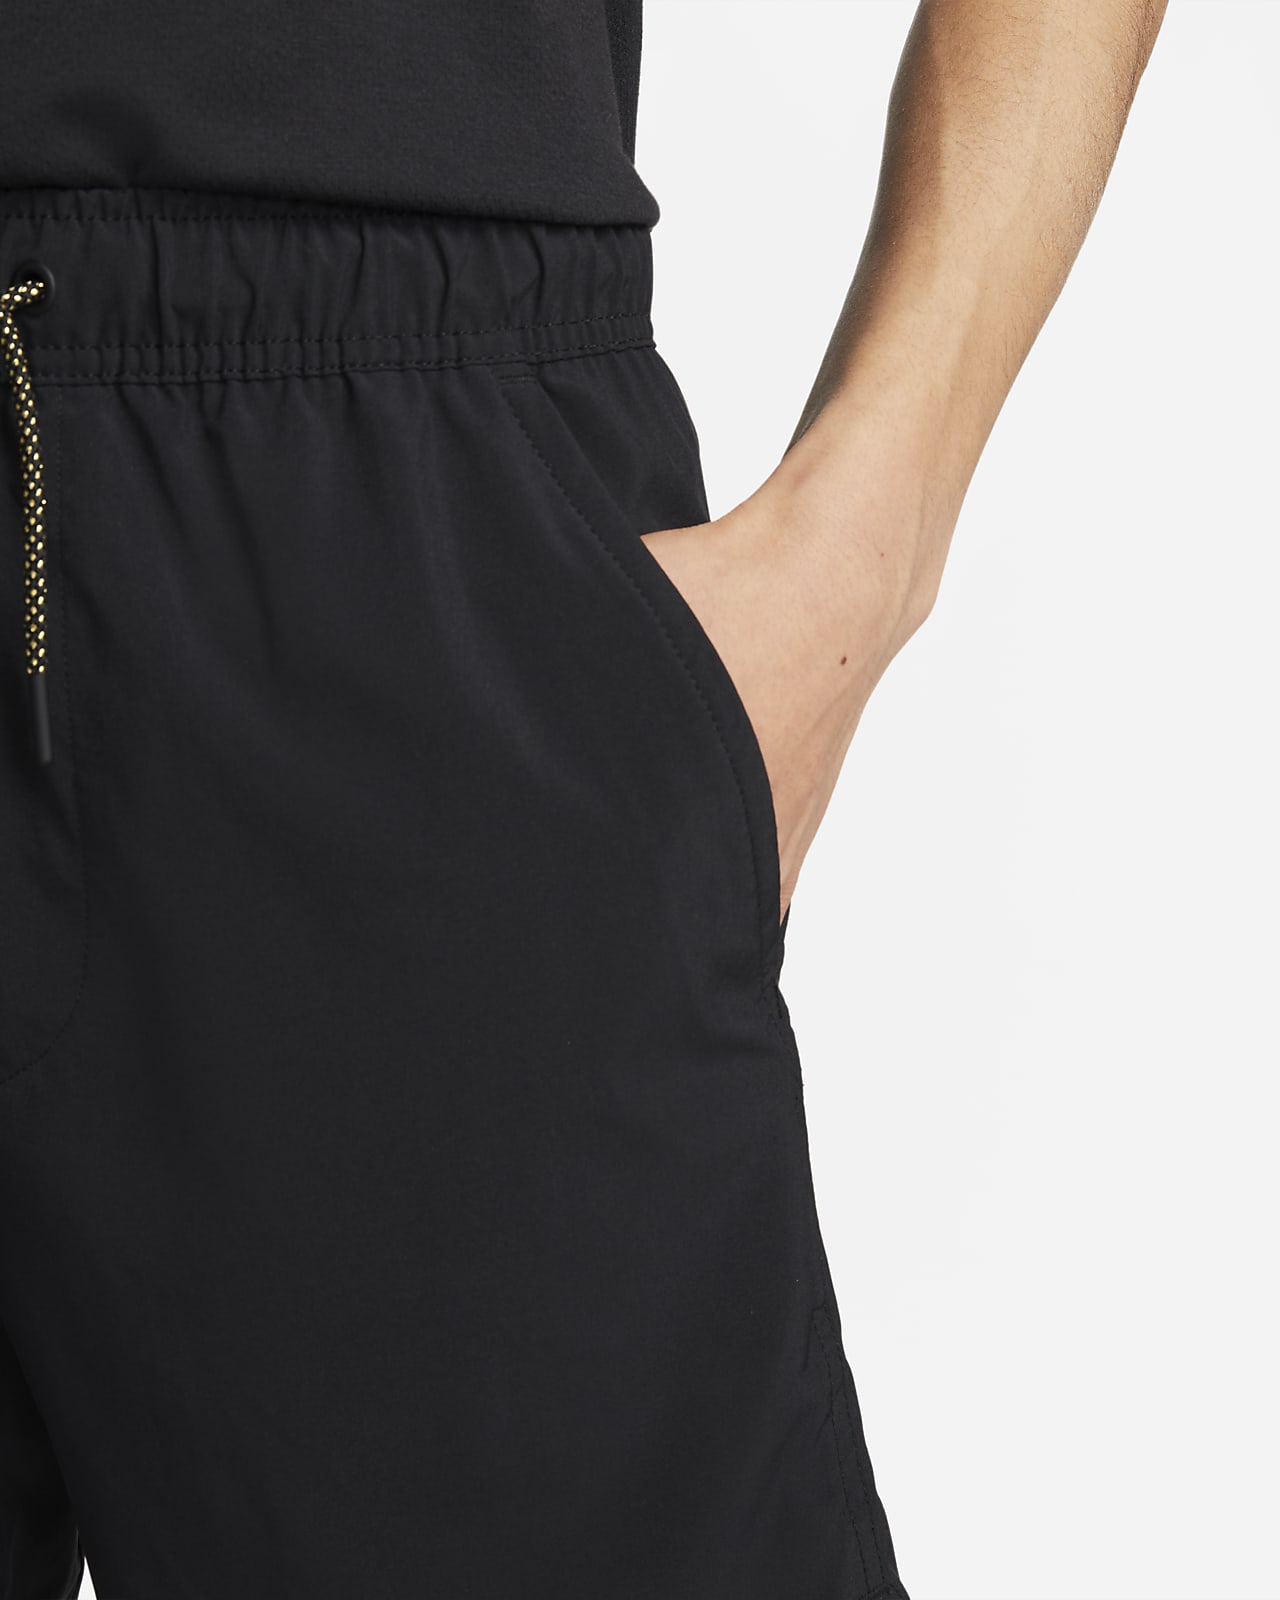 ナイキ Dri-FIT アンリミテッド メンズ 18cm アンラインド バーサタイル ショートパンツ